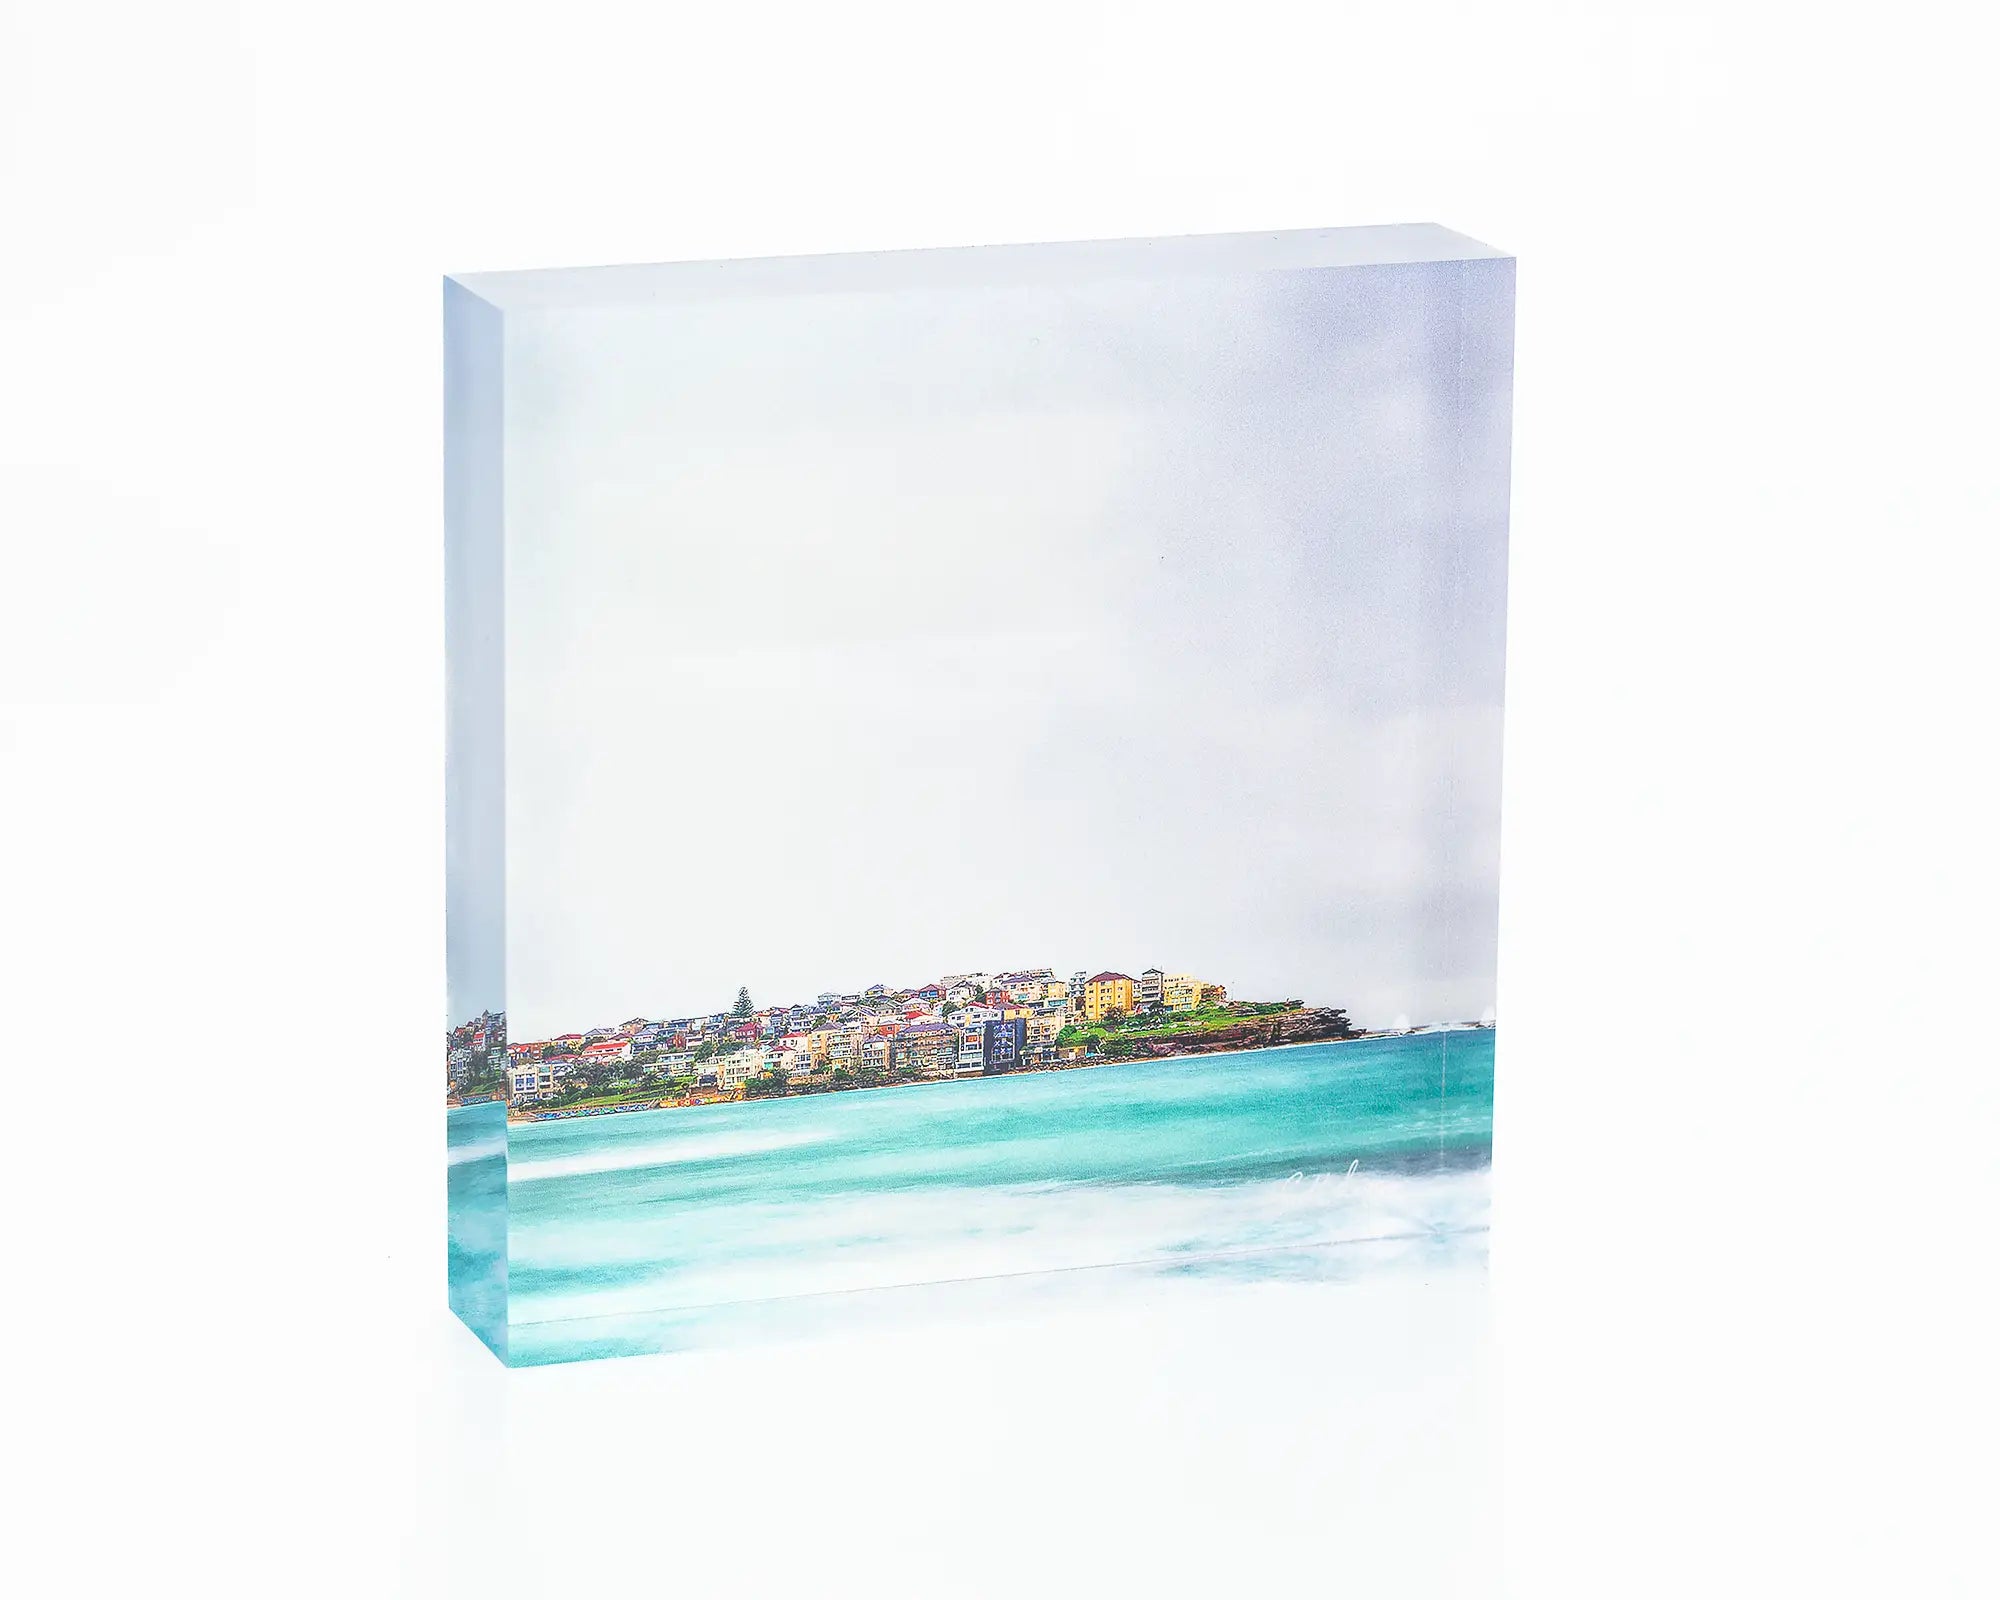 Bondi Views acrylic block - Sydney coastal artwork.